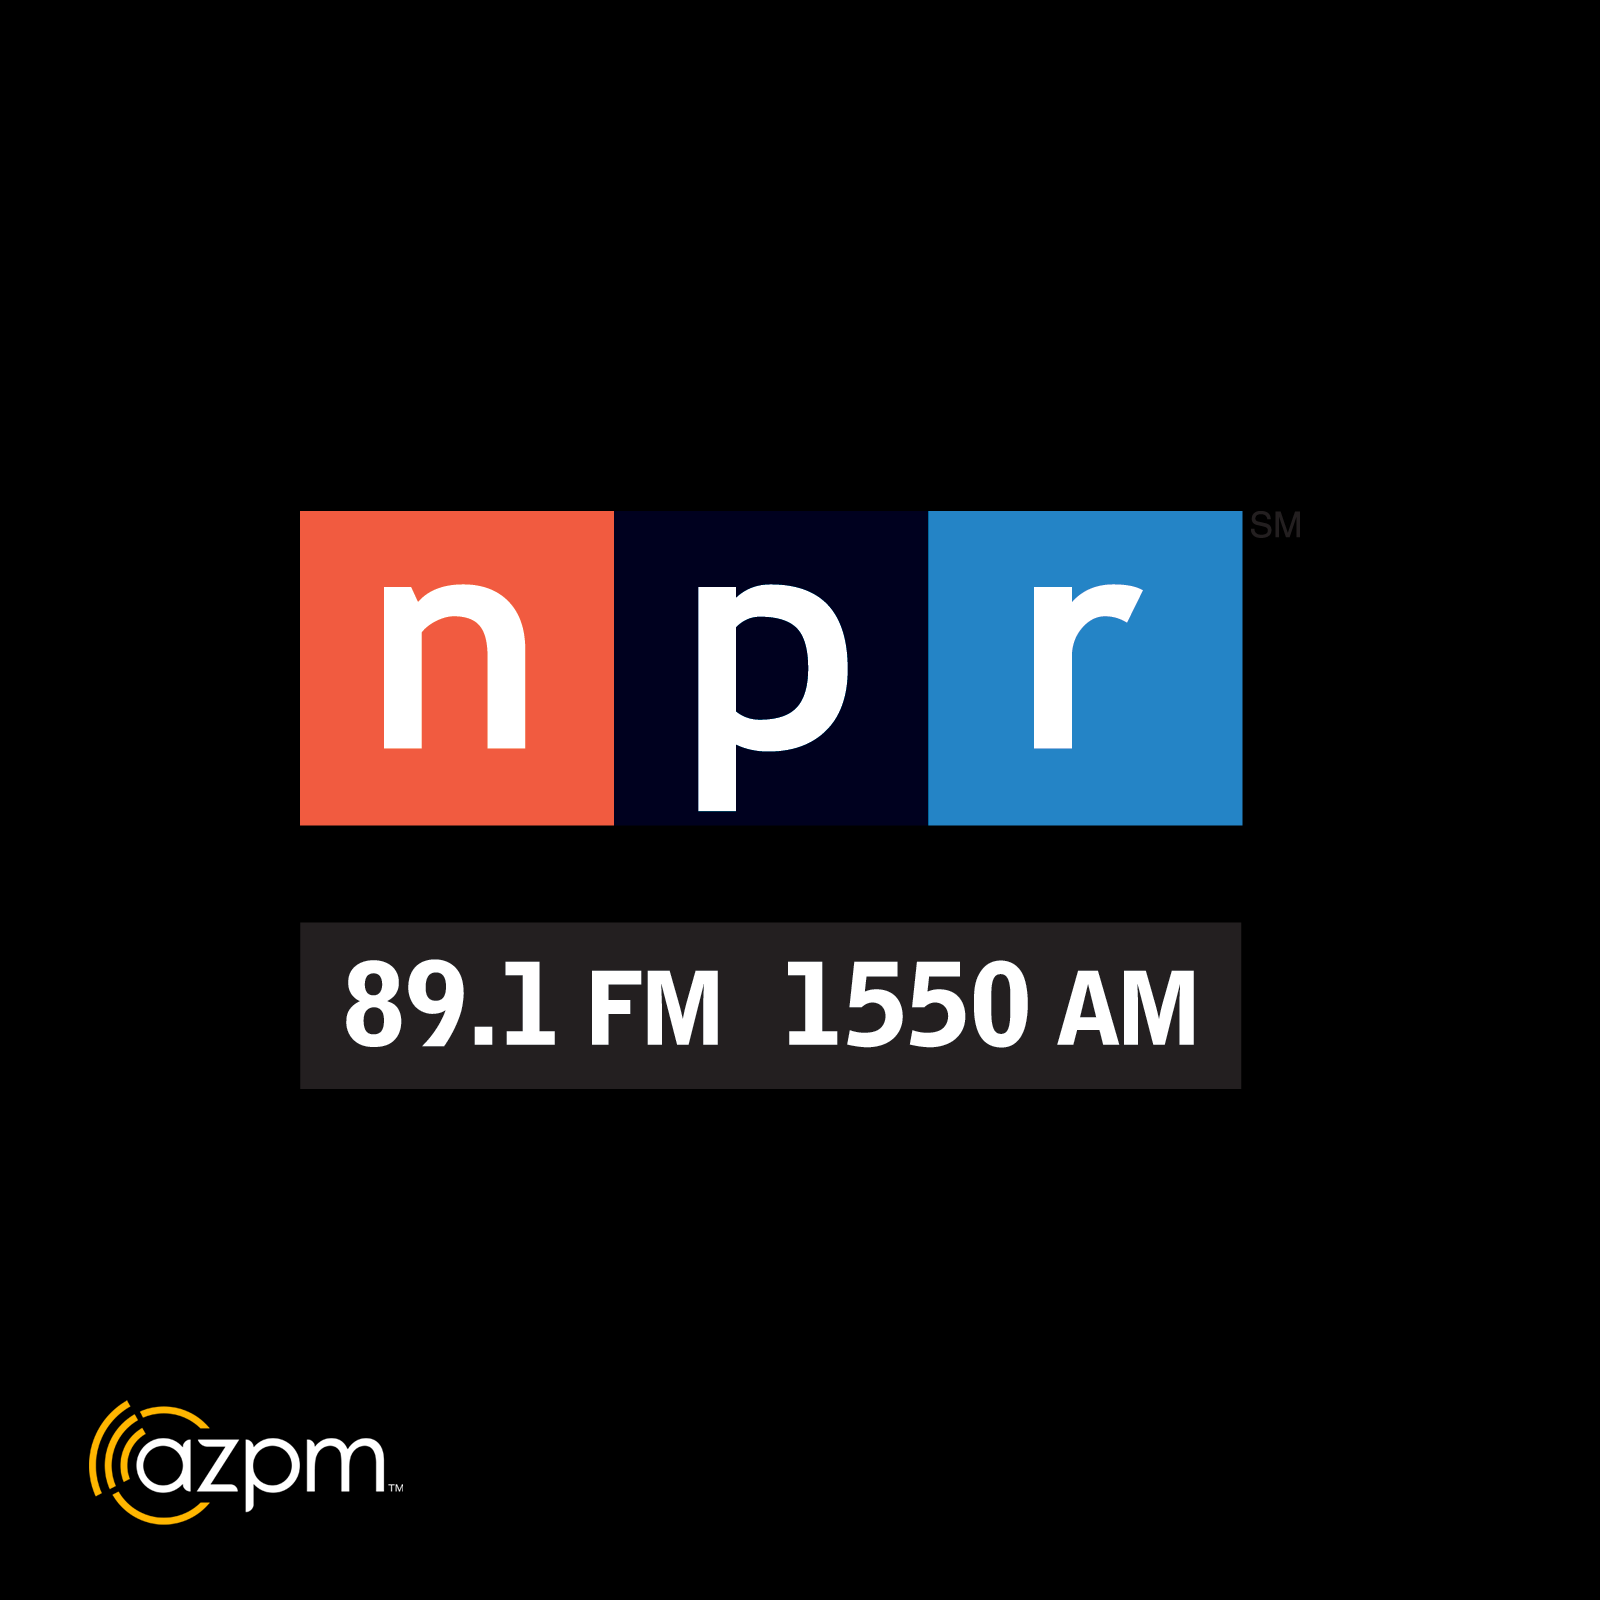 NPR 89.1